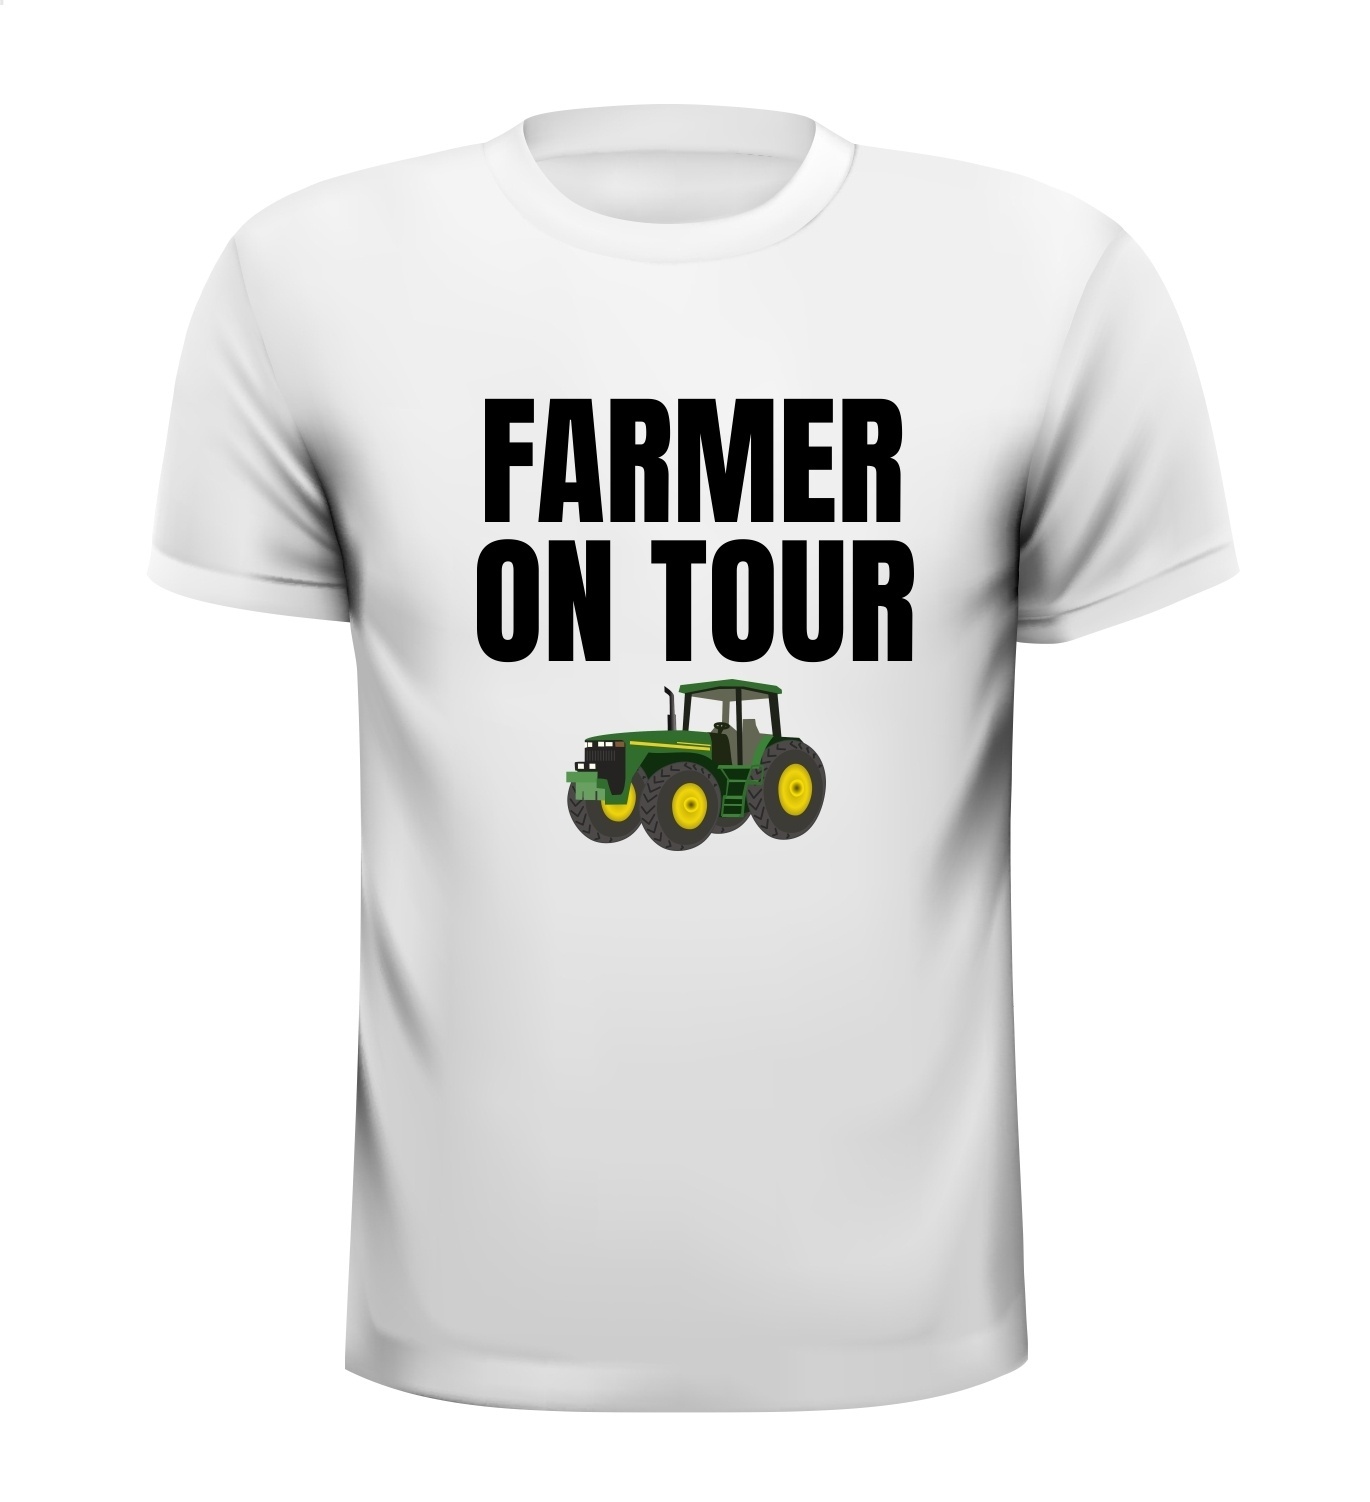 Farmer on tour T-shirt boer boerinnen t-shirt tractor